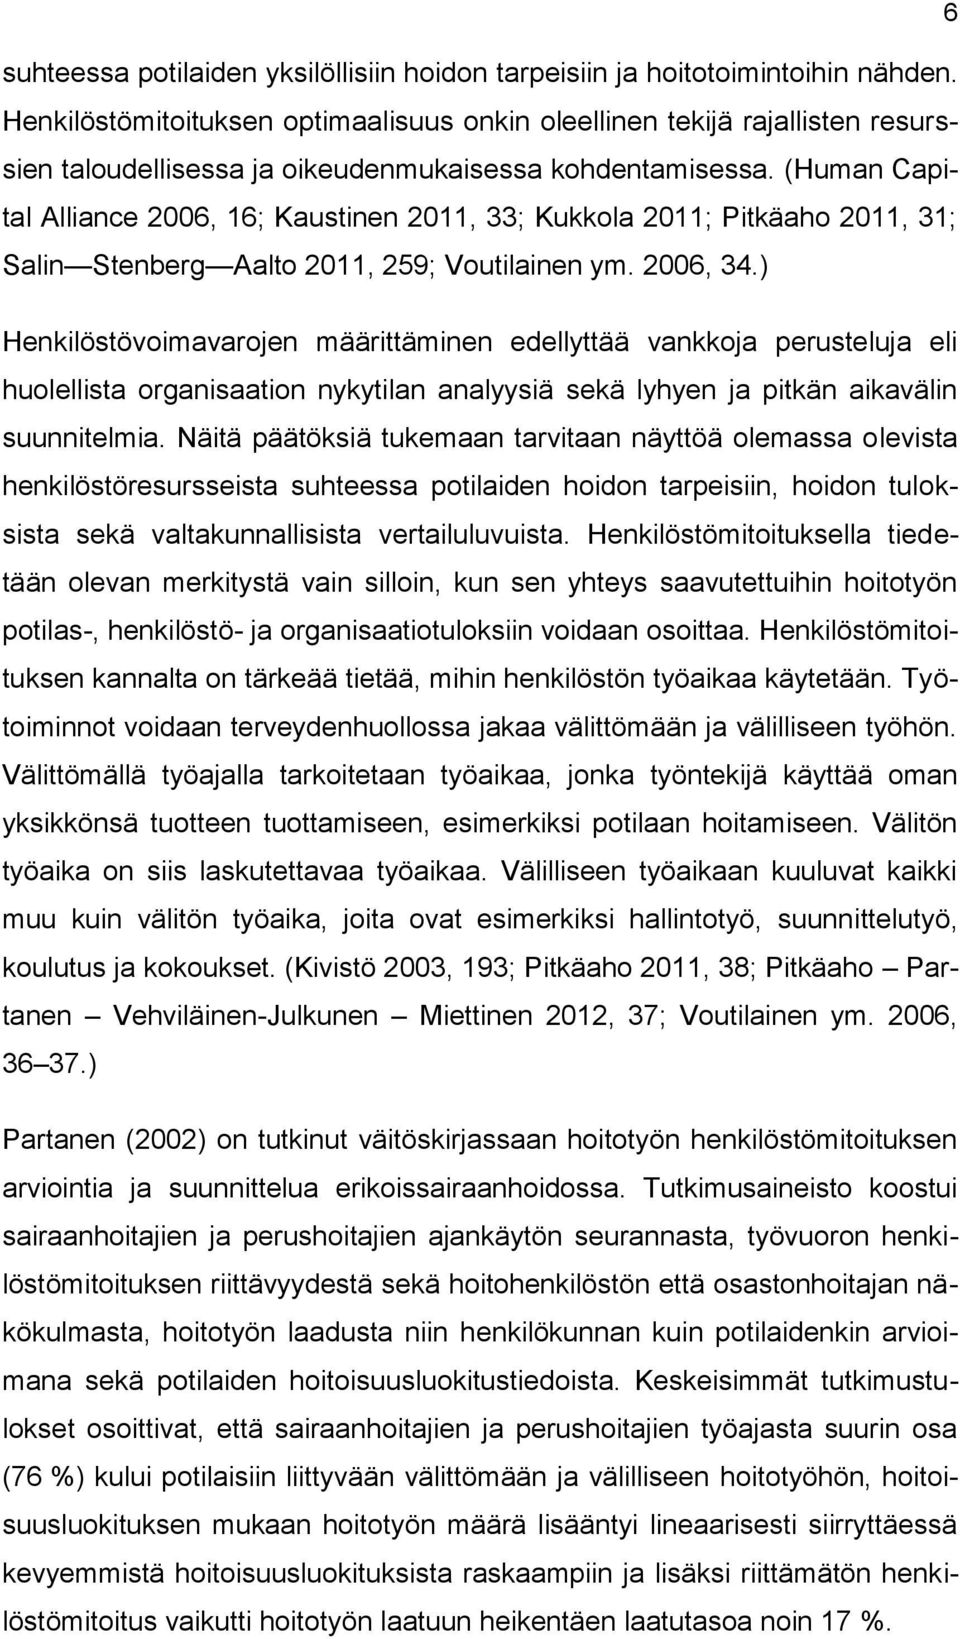 (Human Capital Alliance 2006, 16; Kaustinen 2011, 33; Kukkla 2011; Pitkäah 2011, 31; Salin Stenberg Aalt 2011, 259; Vutilainen ym. 2006, 34.